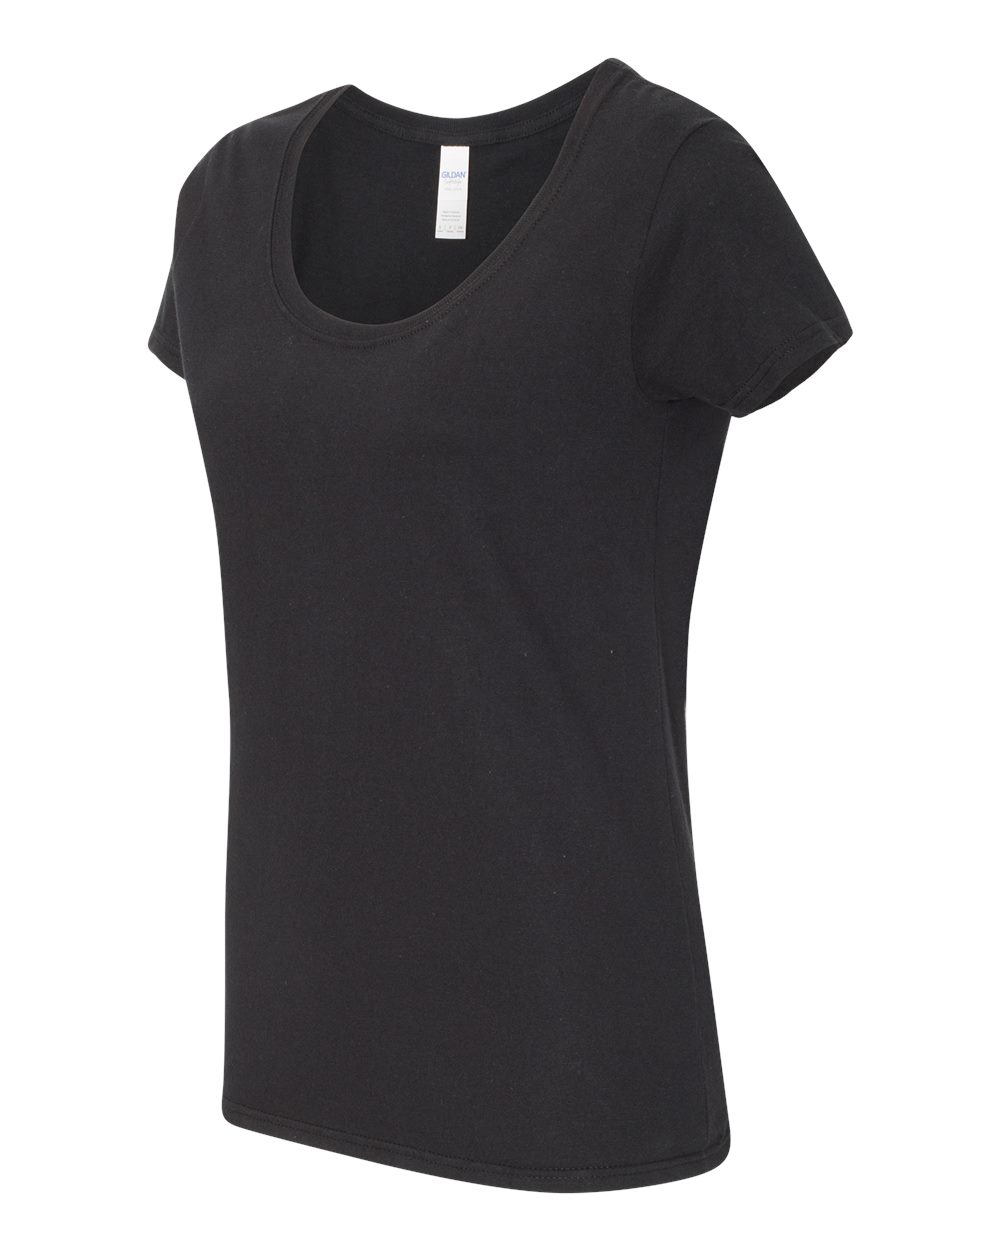 Gildan 64550L - Softstyle Women's Deep Scoopneck T-Shirt